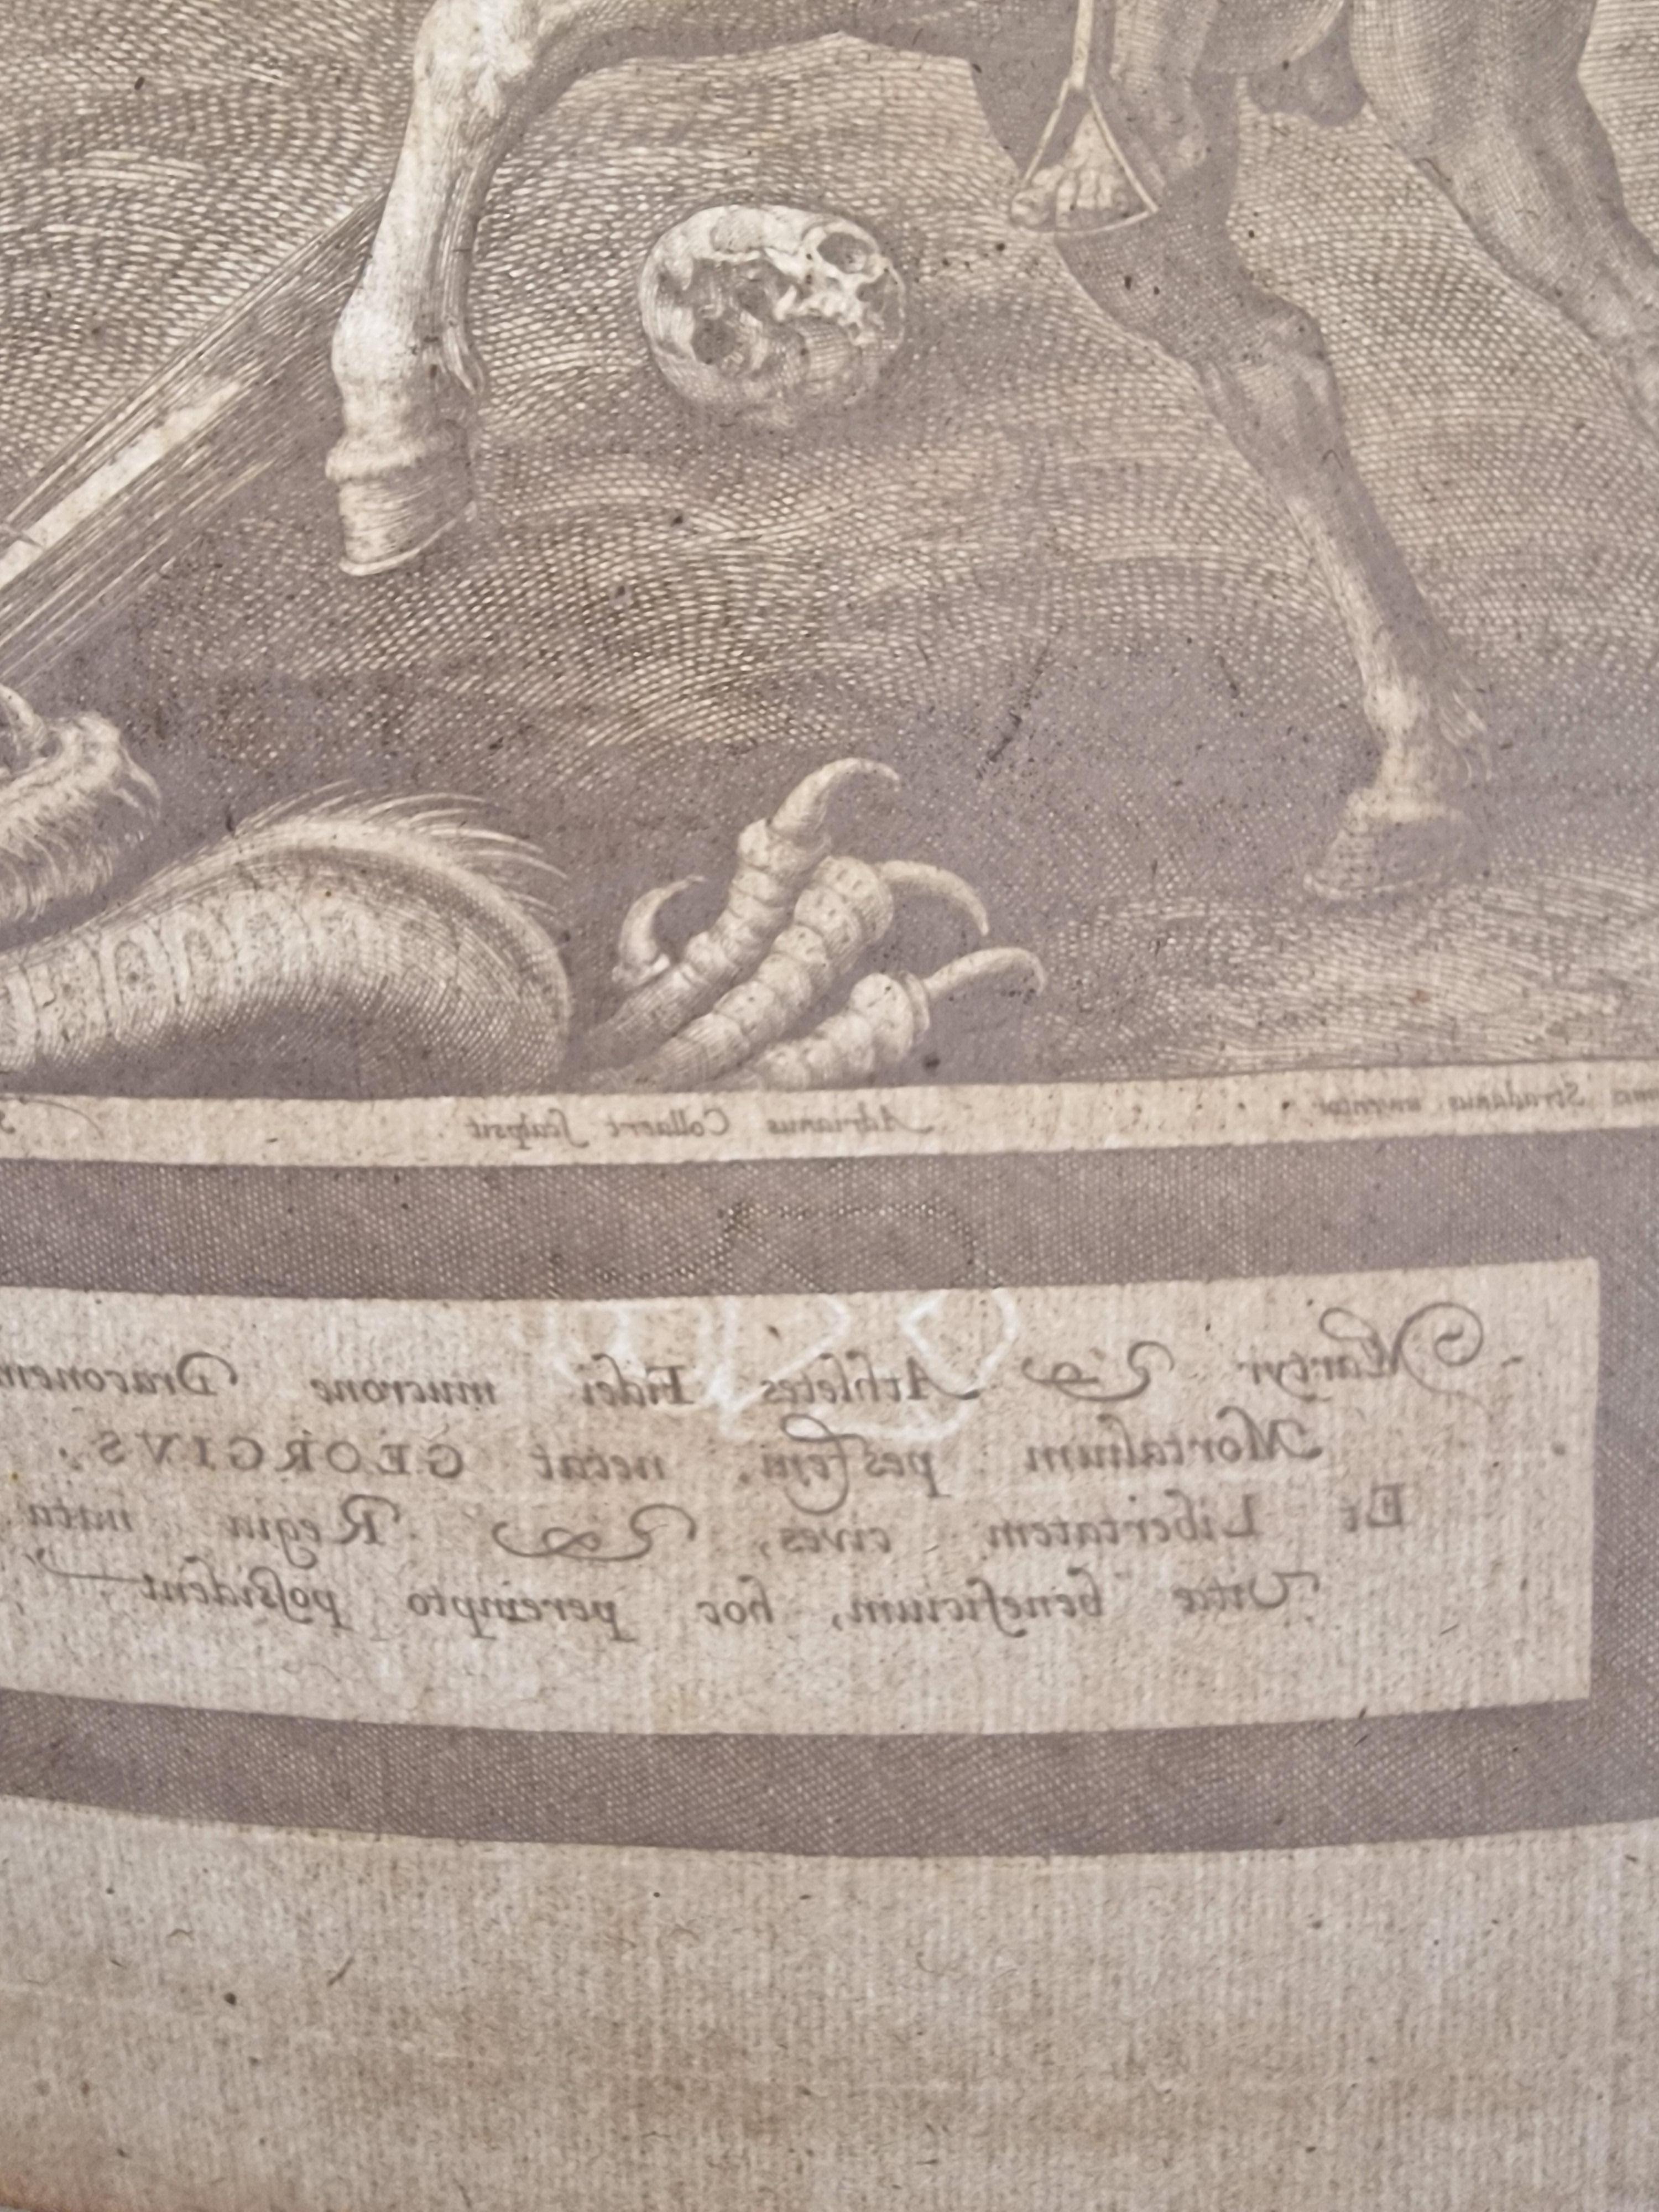 Adriaen COLLAERT
Anvers 1560-1618
Saint George.
Eau forte.
Bon état de conservation, papier empoussiéré, tâches éparses sans atteinte au sujet, trace d’ancien montage, quelques plis de manipulations, un ancien pli diagonal dans le coin supérieur